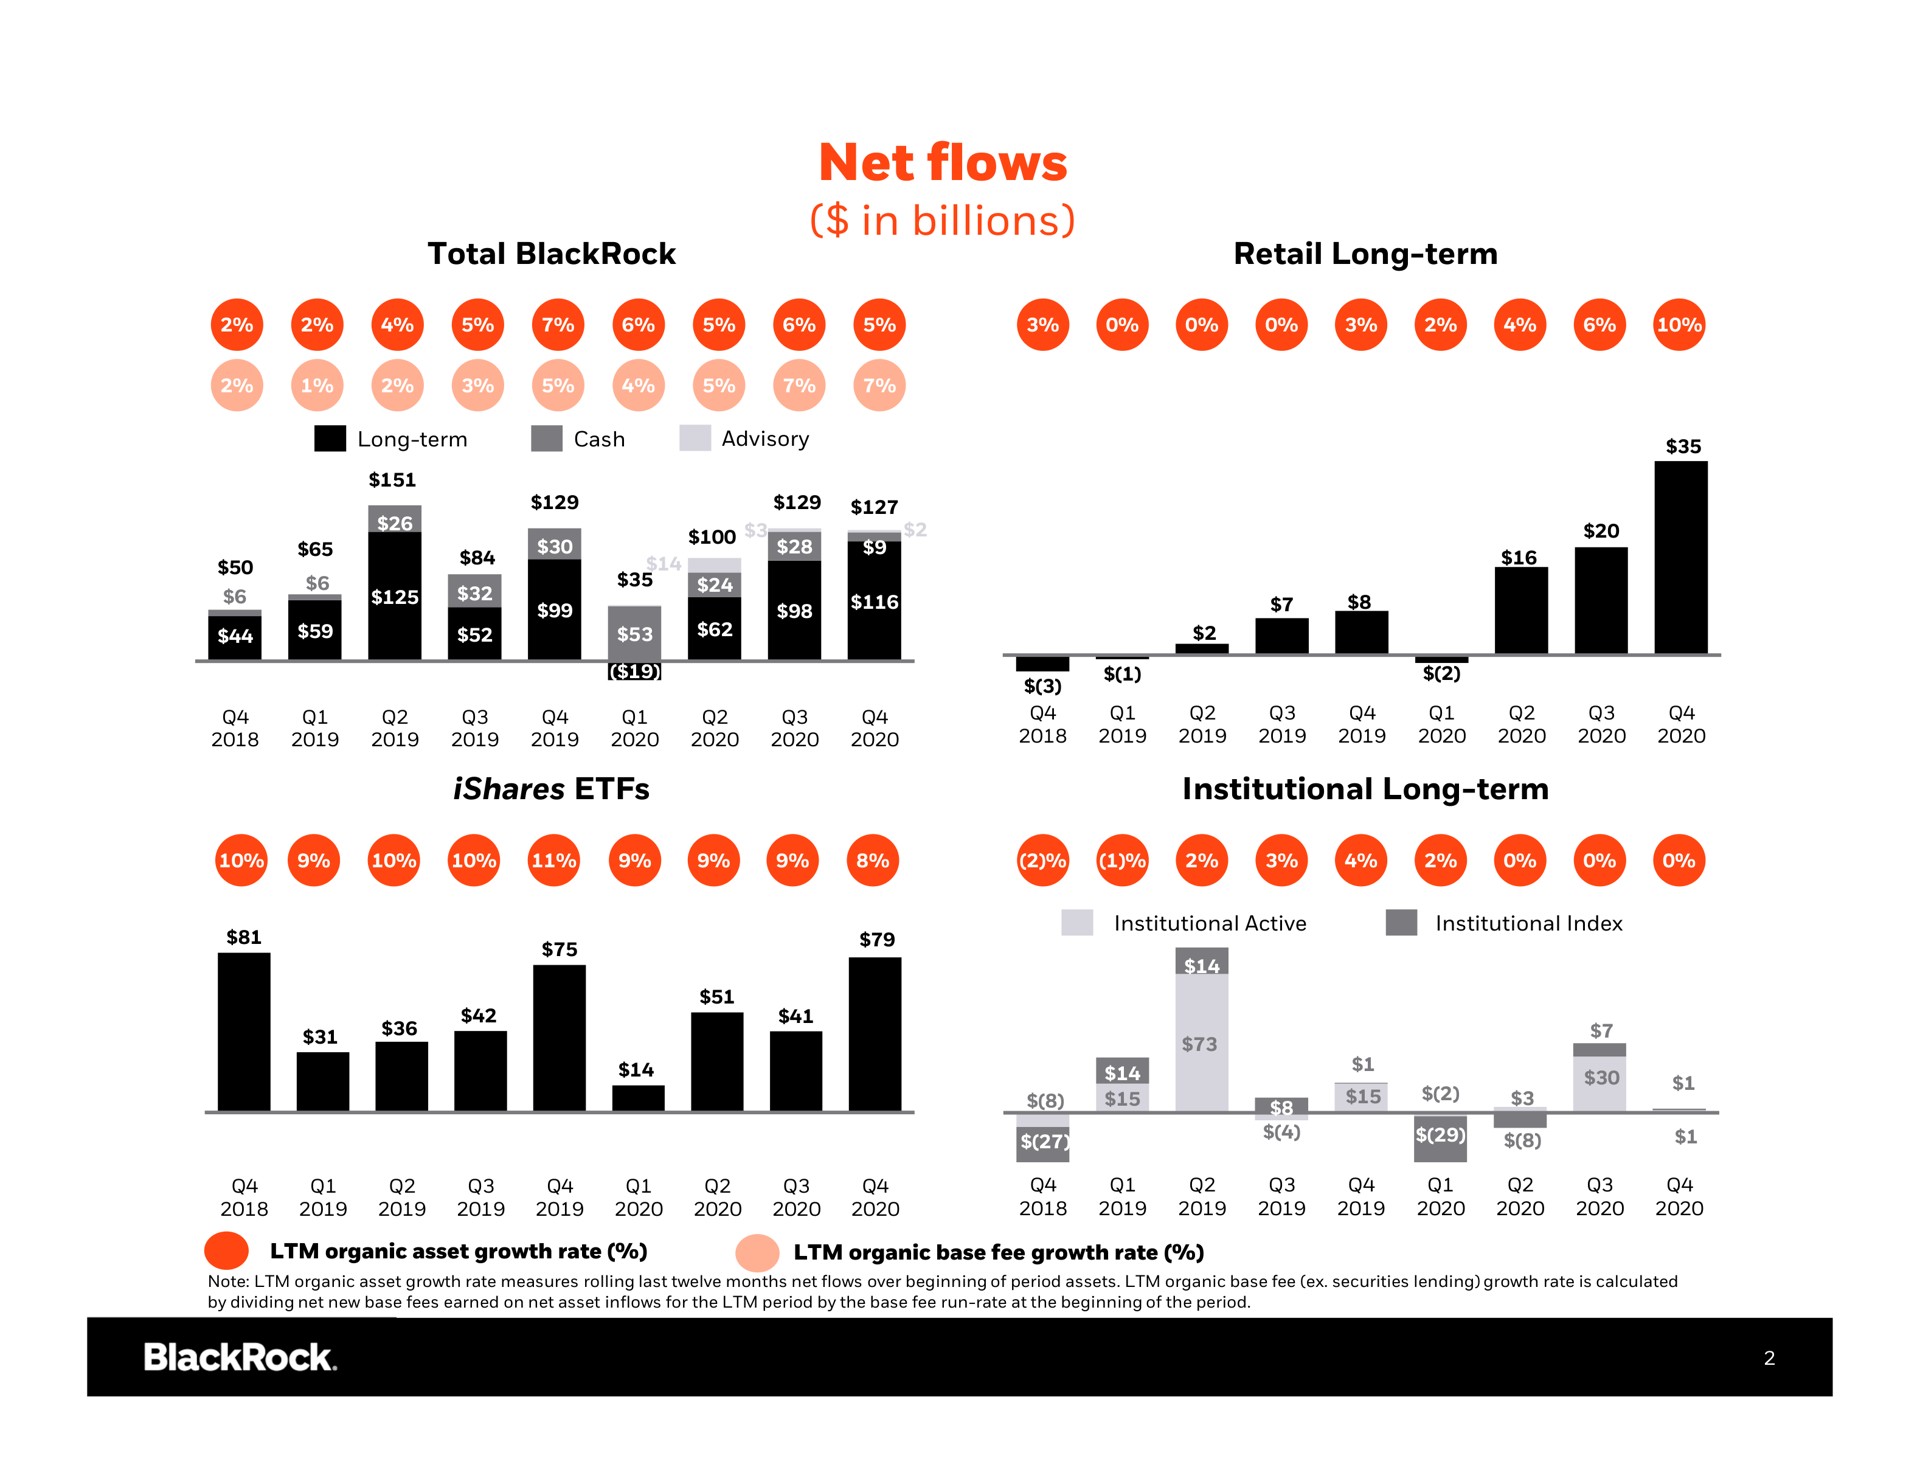 net flows in billions is | BlackRock